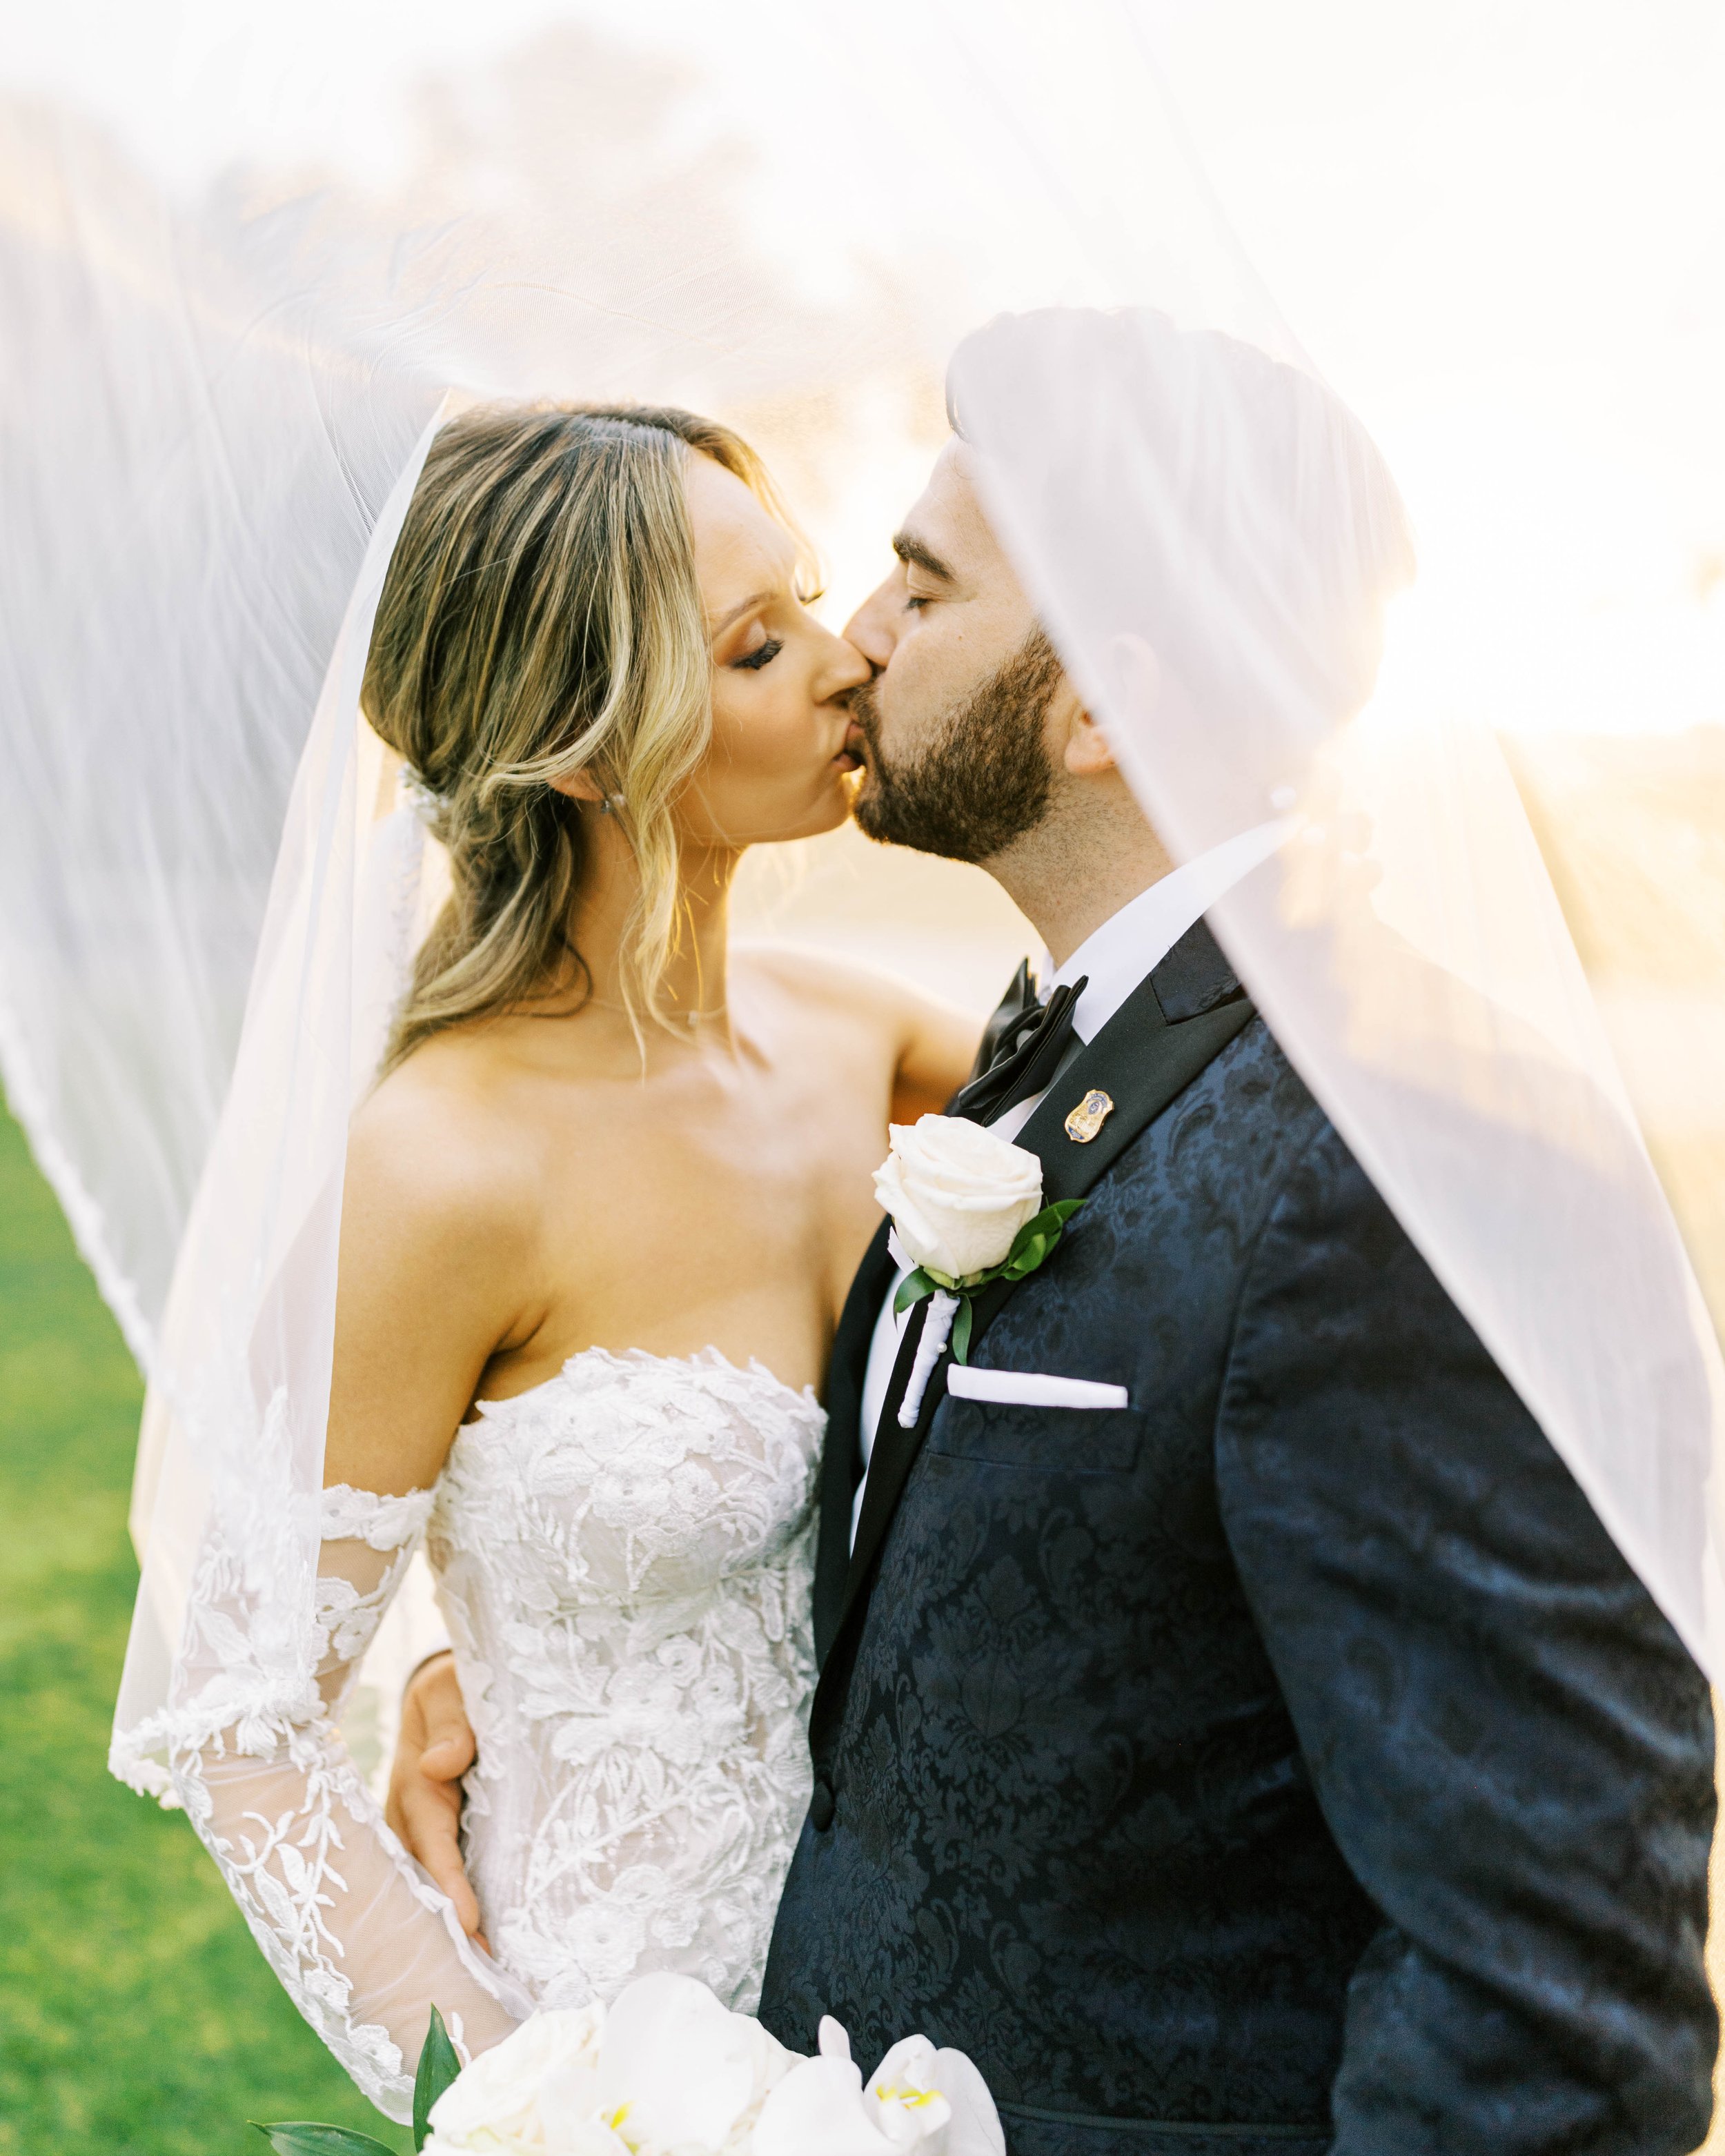 Vaz & Caitlin - bride & groom - Chrissy O'Neill & Co. - South Florida Wedding Photographer-149.jpg